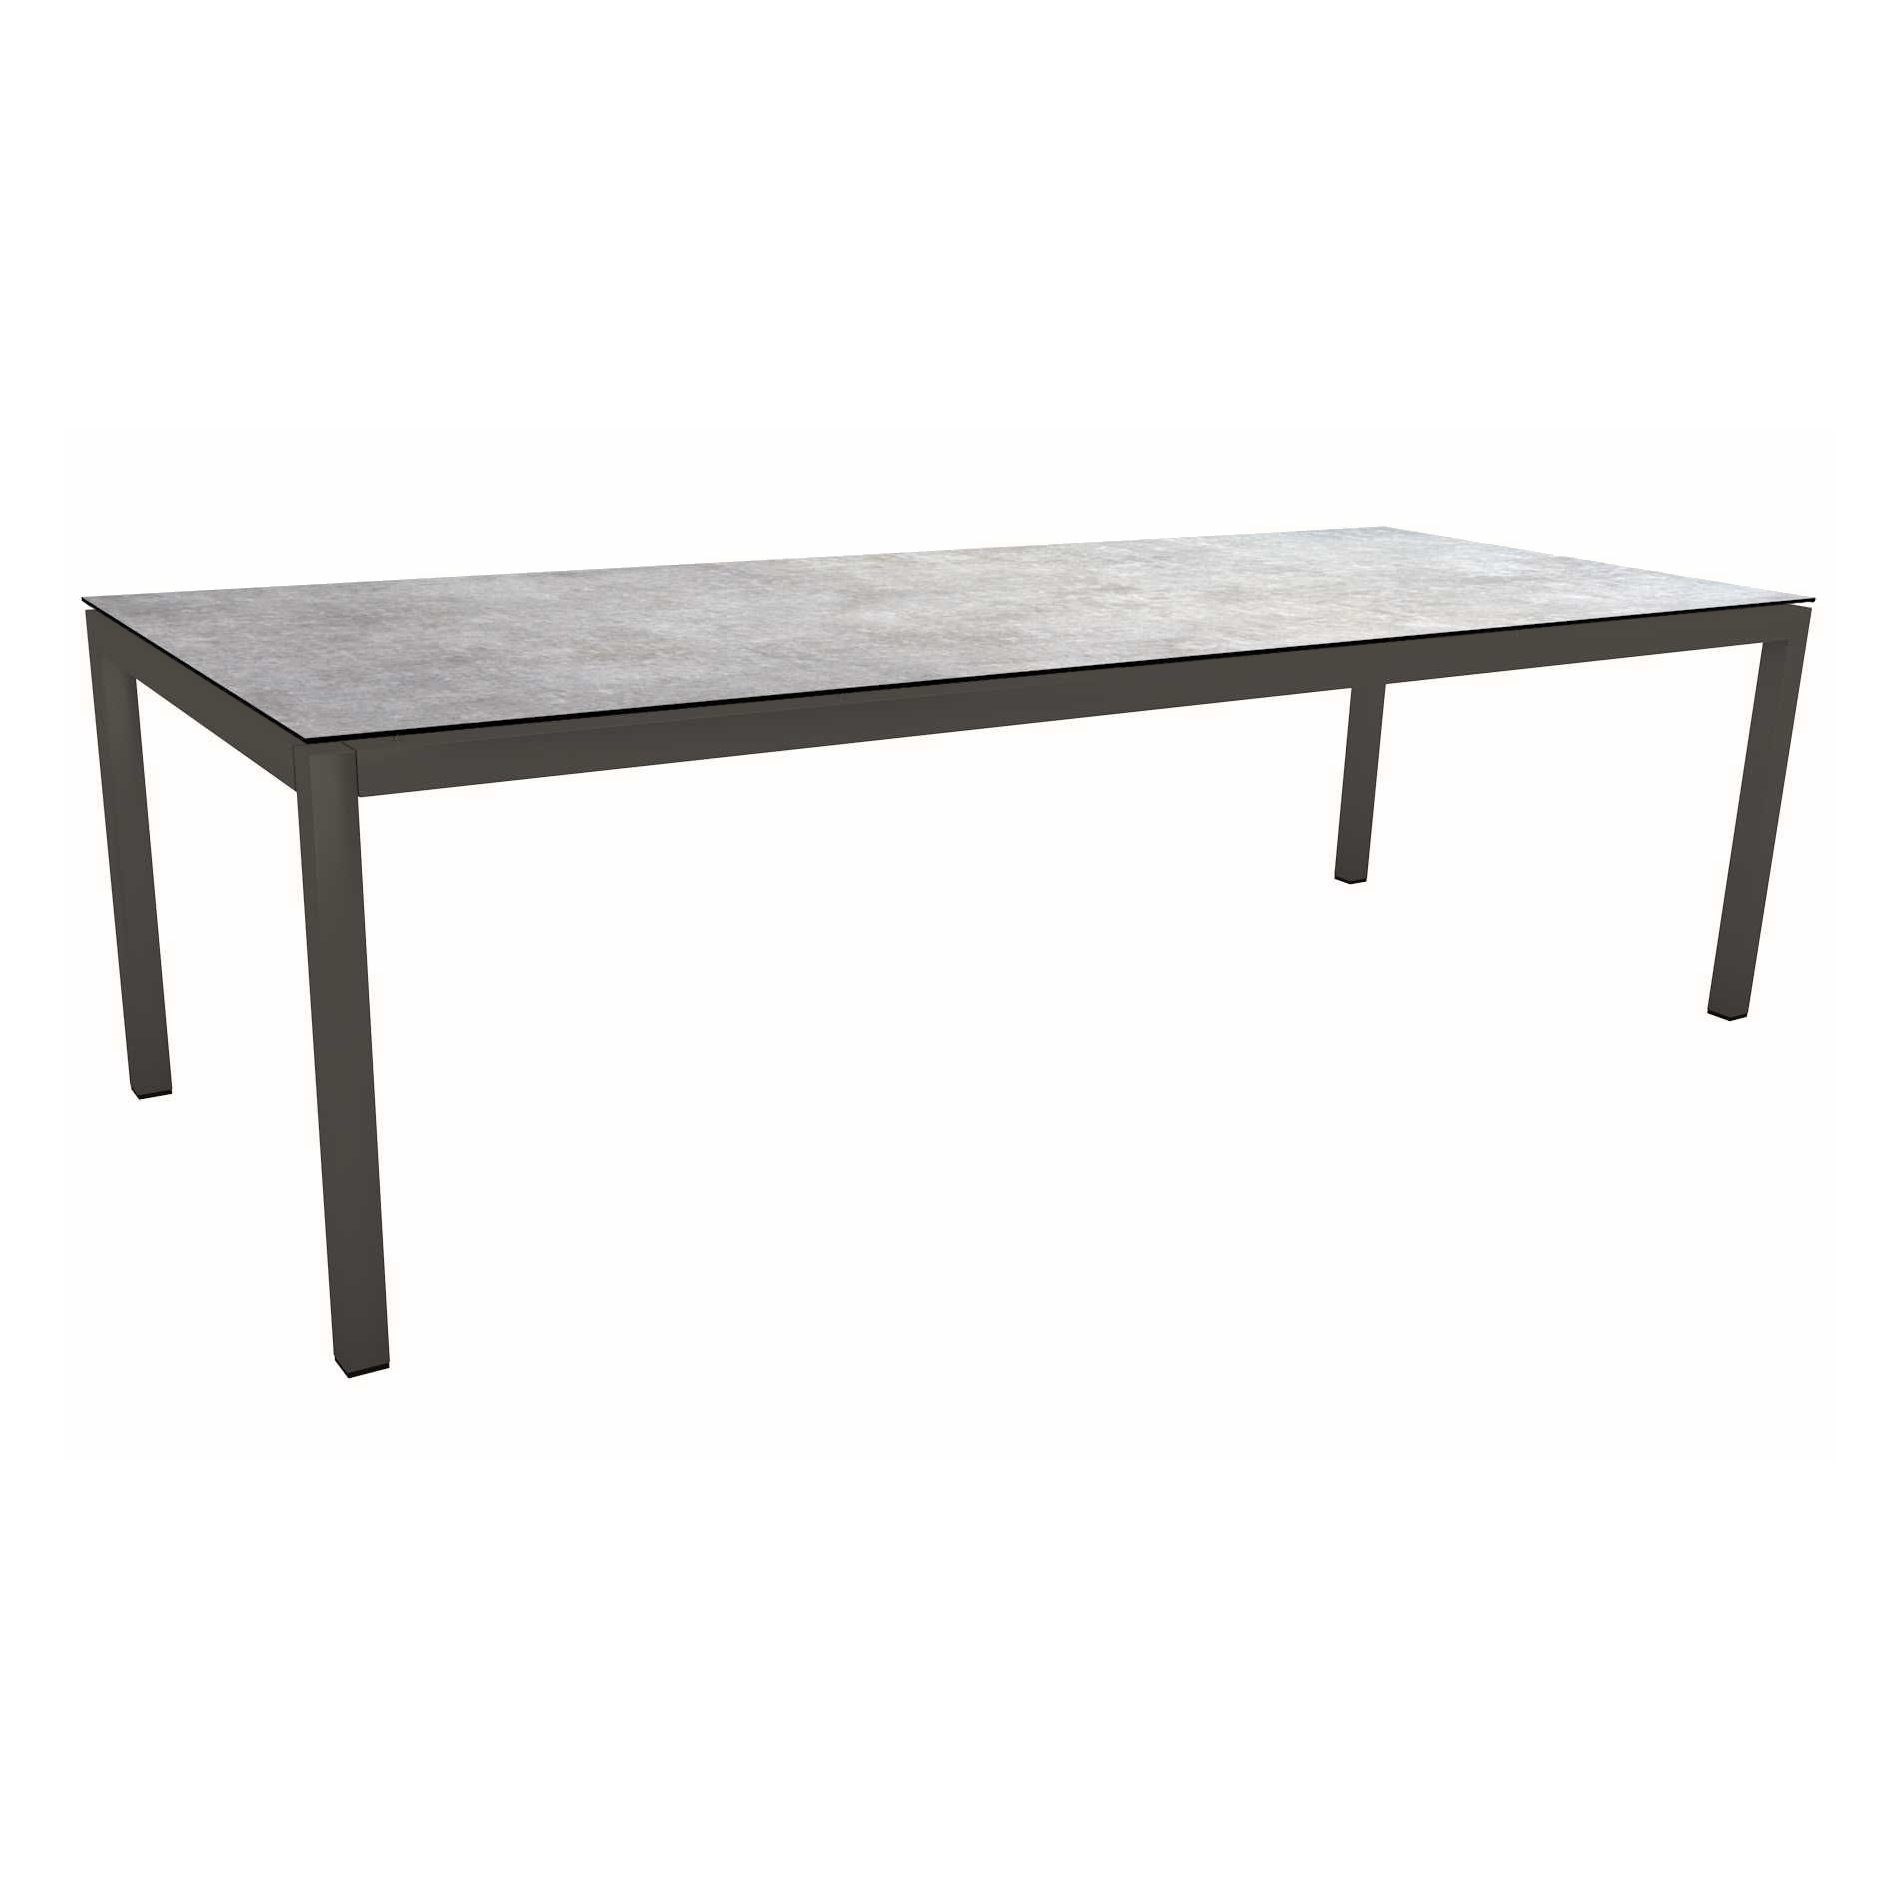 Stern Tischsystem Gartentisch, Gestell Aluminium anthrazit, Tischplatte HPL Metallic grau, Maße: 250x100 cm